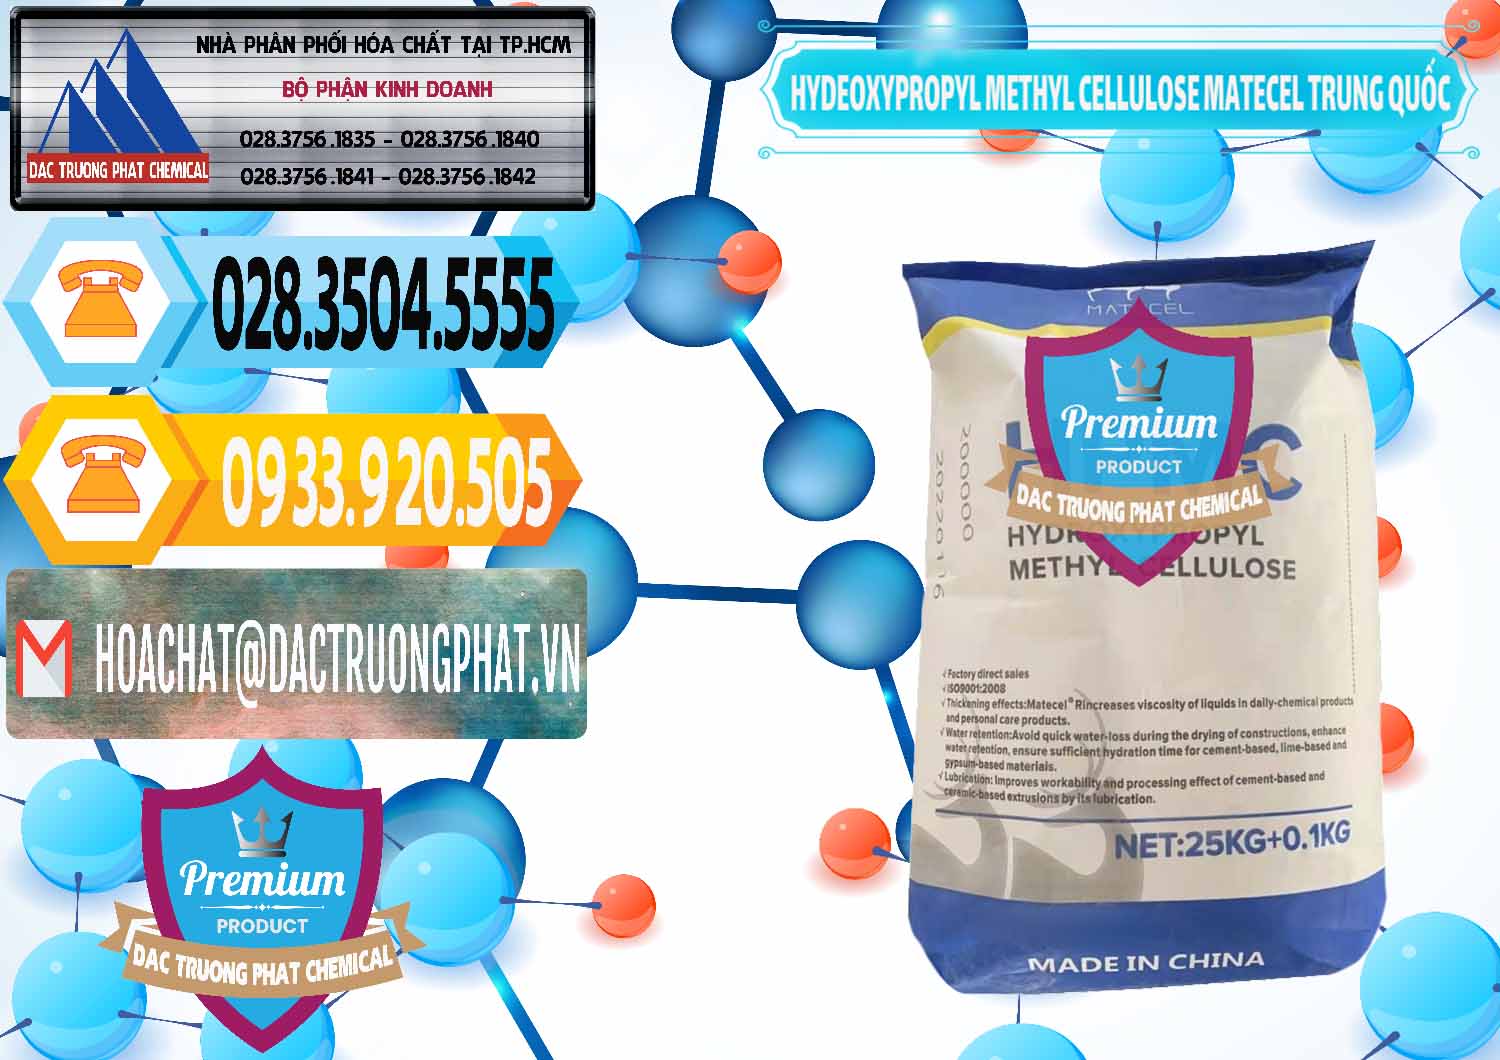 Chuyên bán và cung ứng Chất Tạo Đặc HPMC - Hydroxypropyl Methyl Cellulose Matecel Trung Quốc China - 0396 - Đơn vị bán _ cung cấp hóa chất tại TP.HCM - hoachattayrua.net